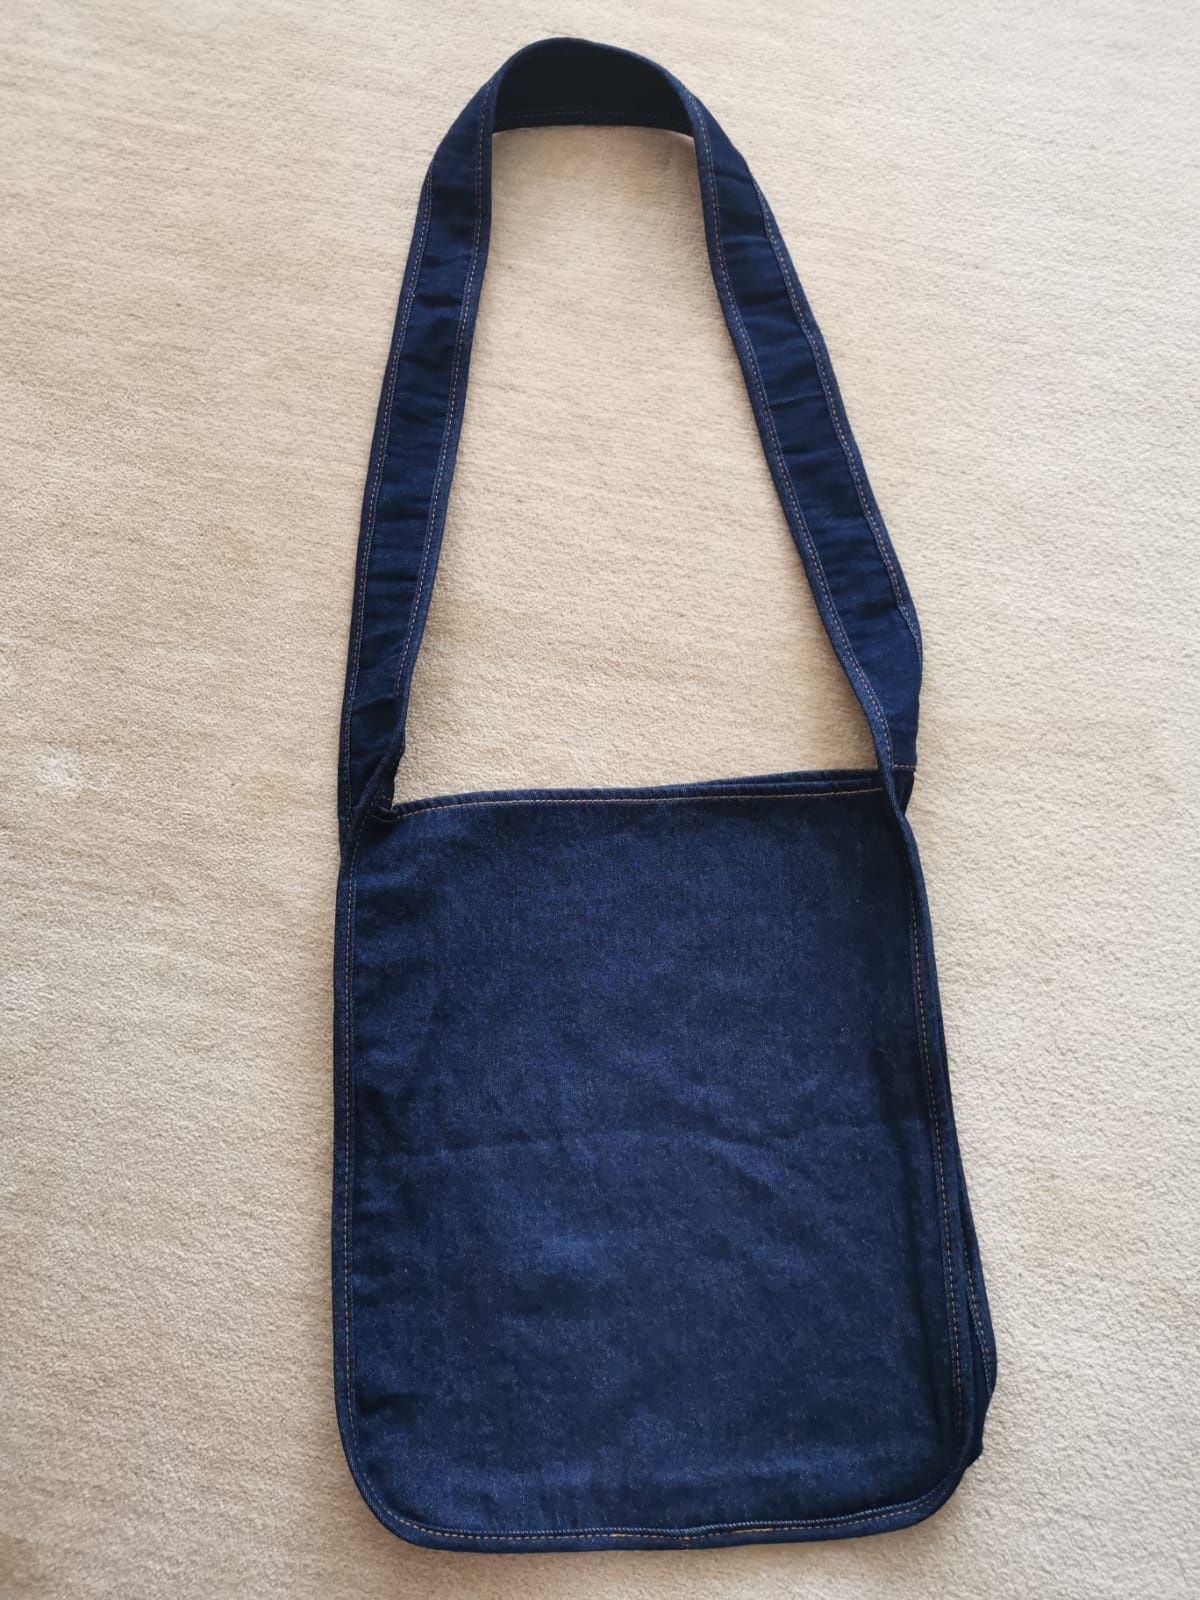 Oryginalna torebka jeansowa modnej marki Mavi